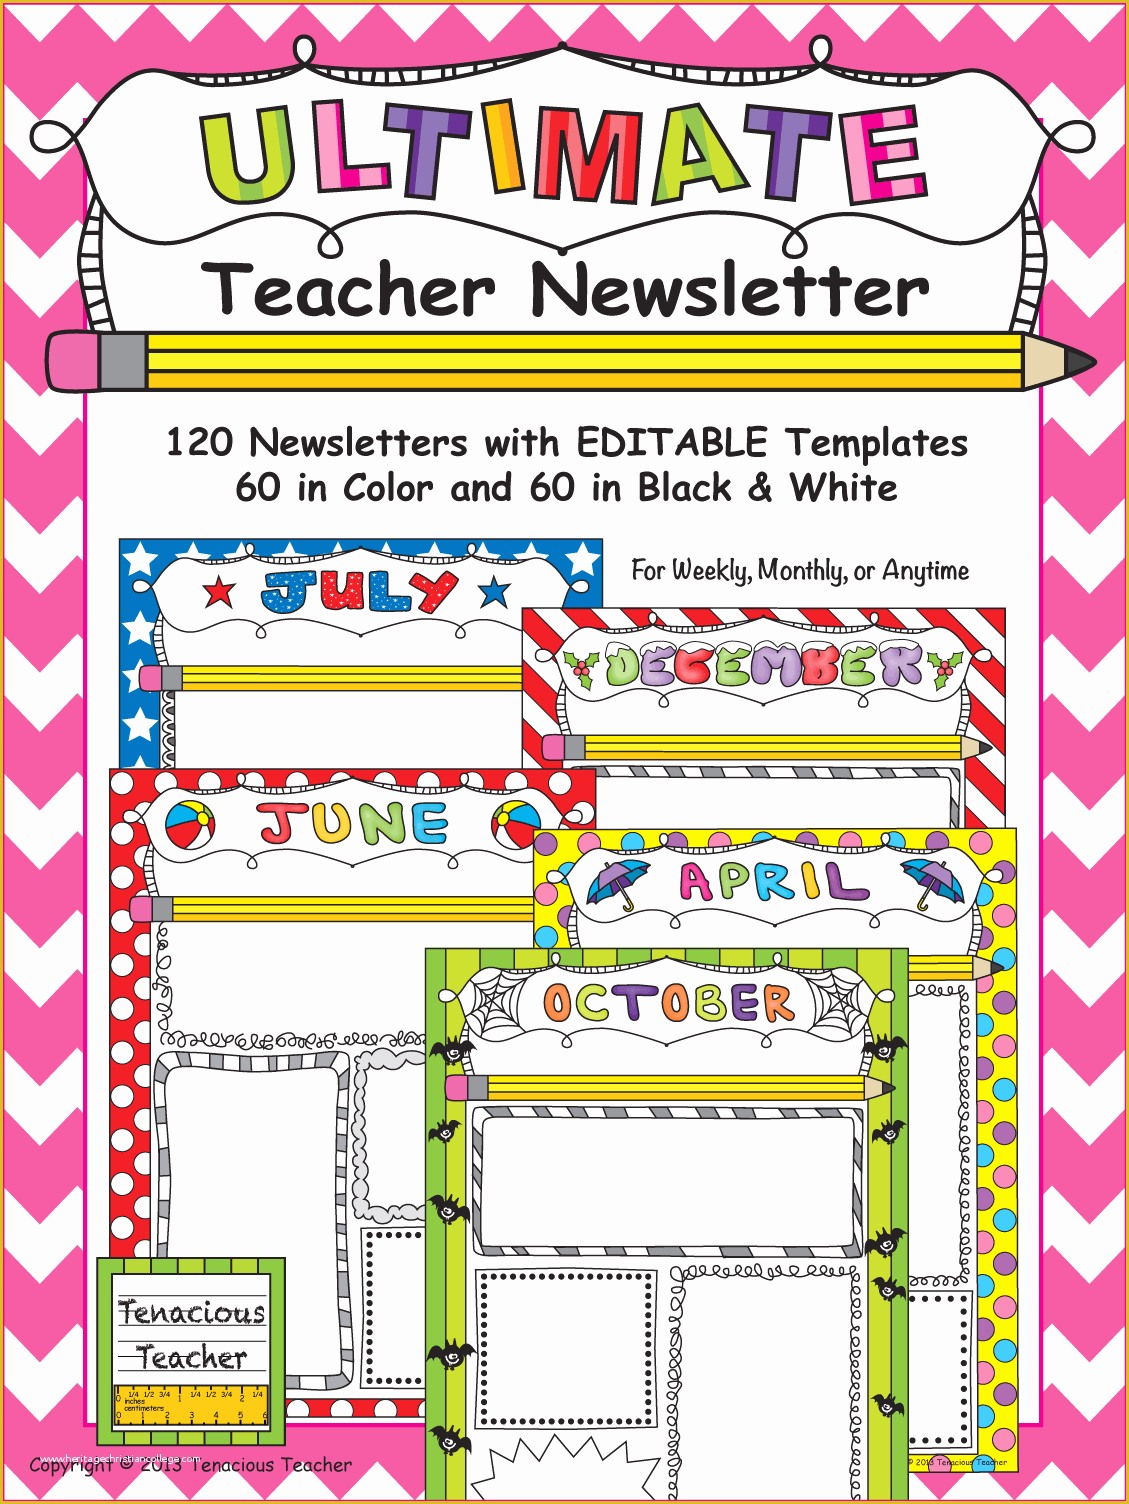 Free Newsletter Templates for Teachers Of Ultimate Teacher Newsletter